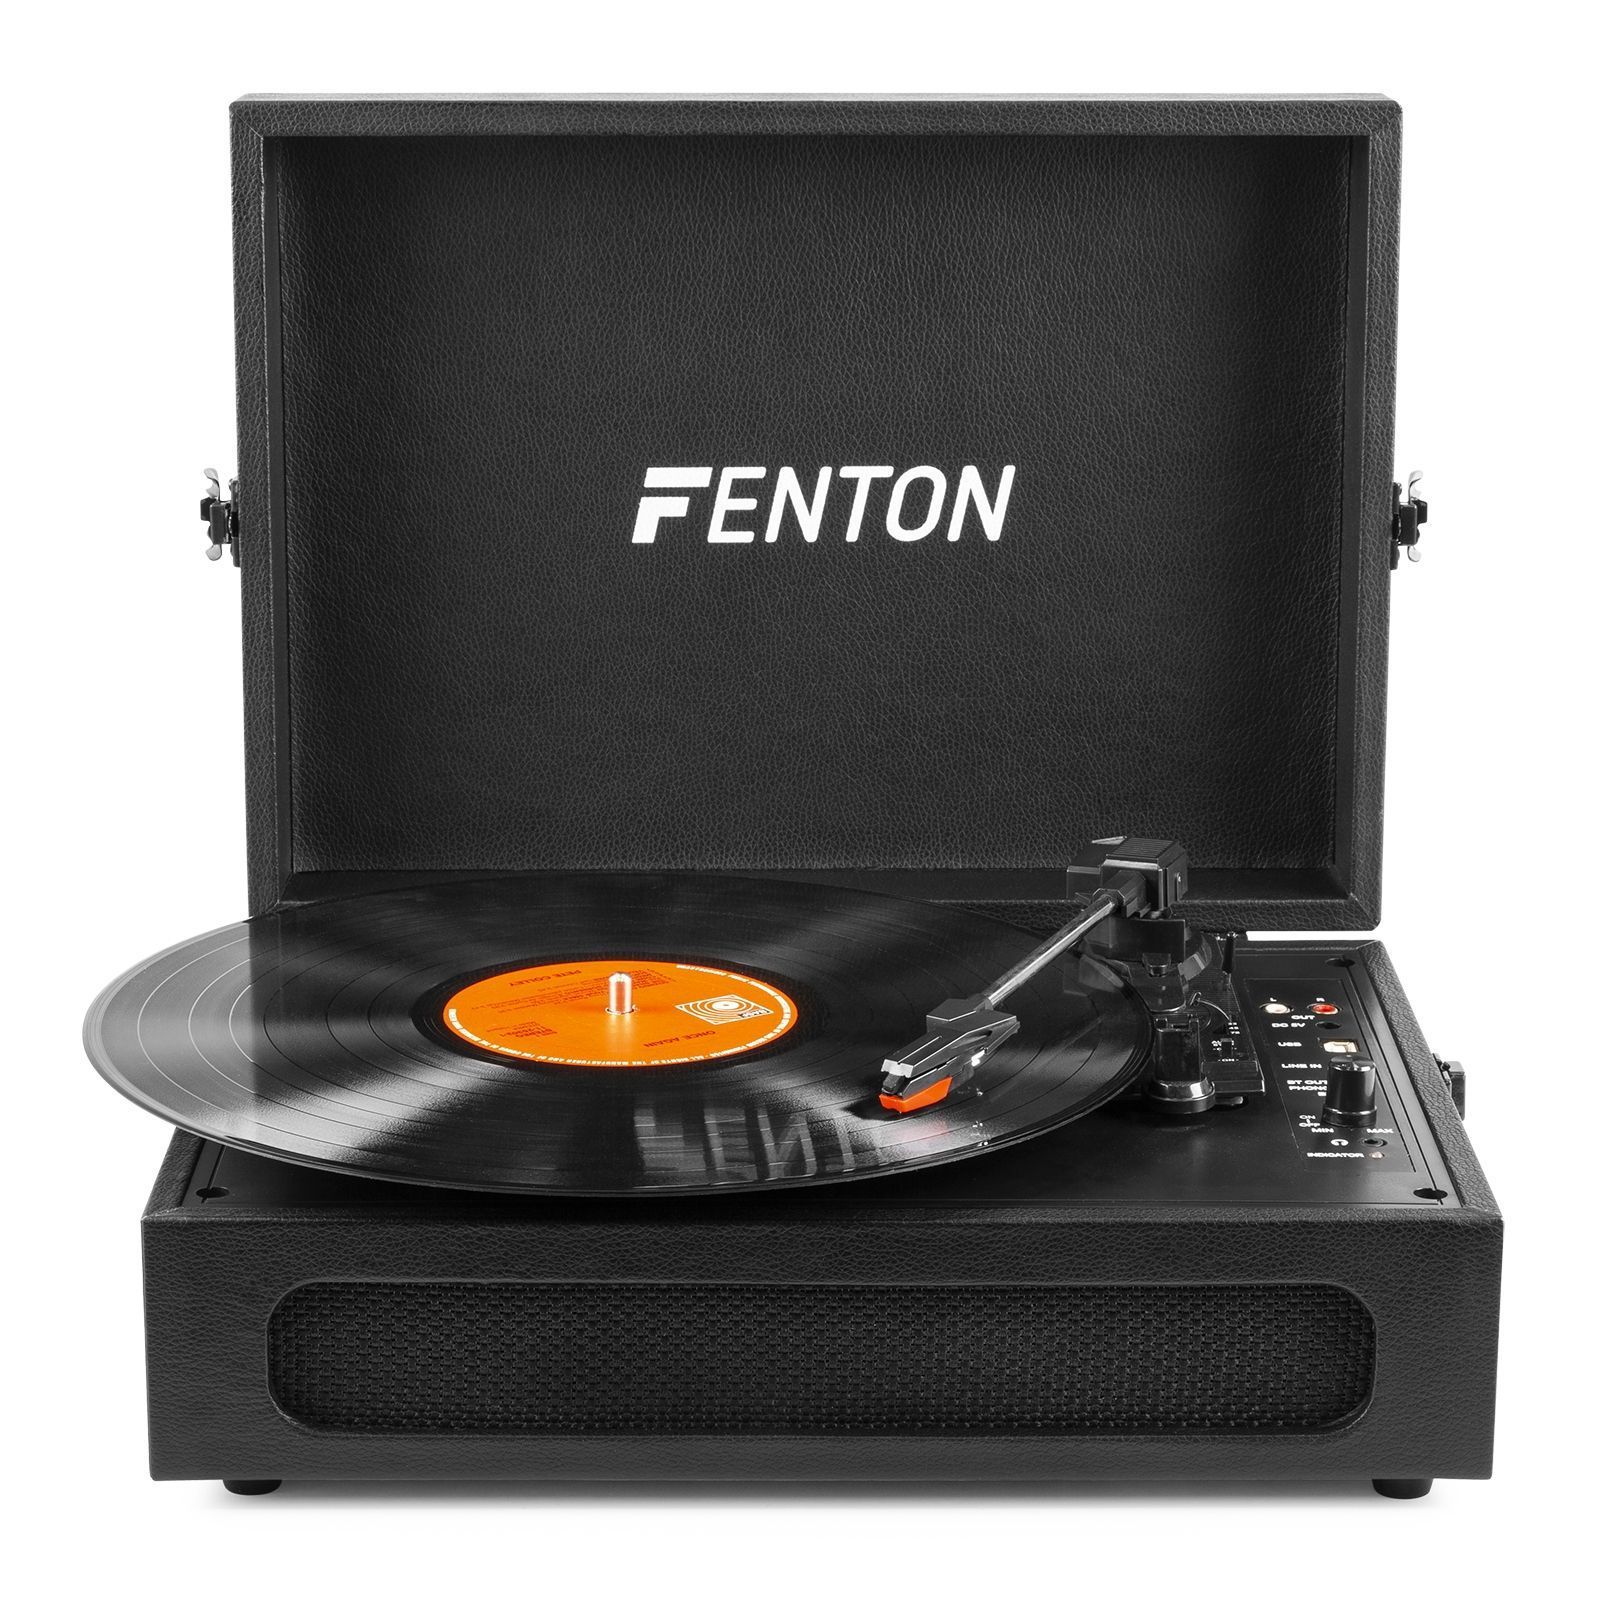 Fenton RP180 Platine Vinyle Lecteur CD Design Retro - Bois foncé